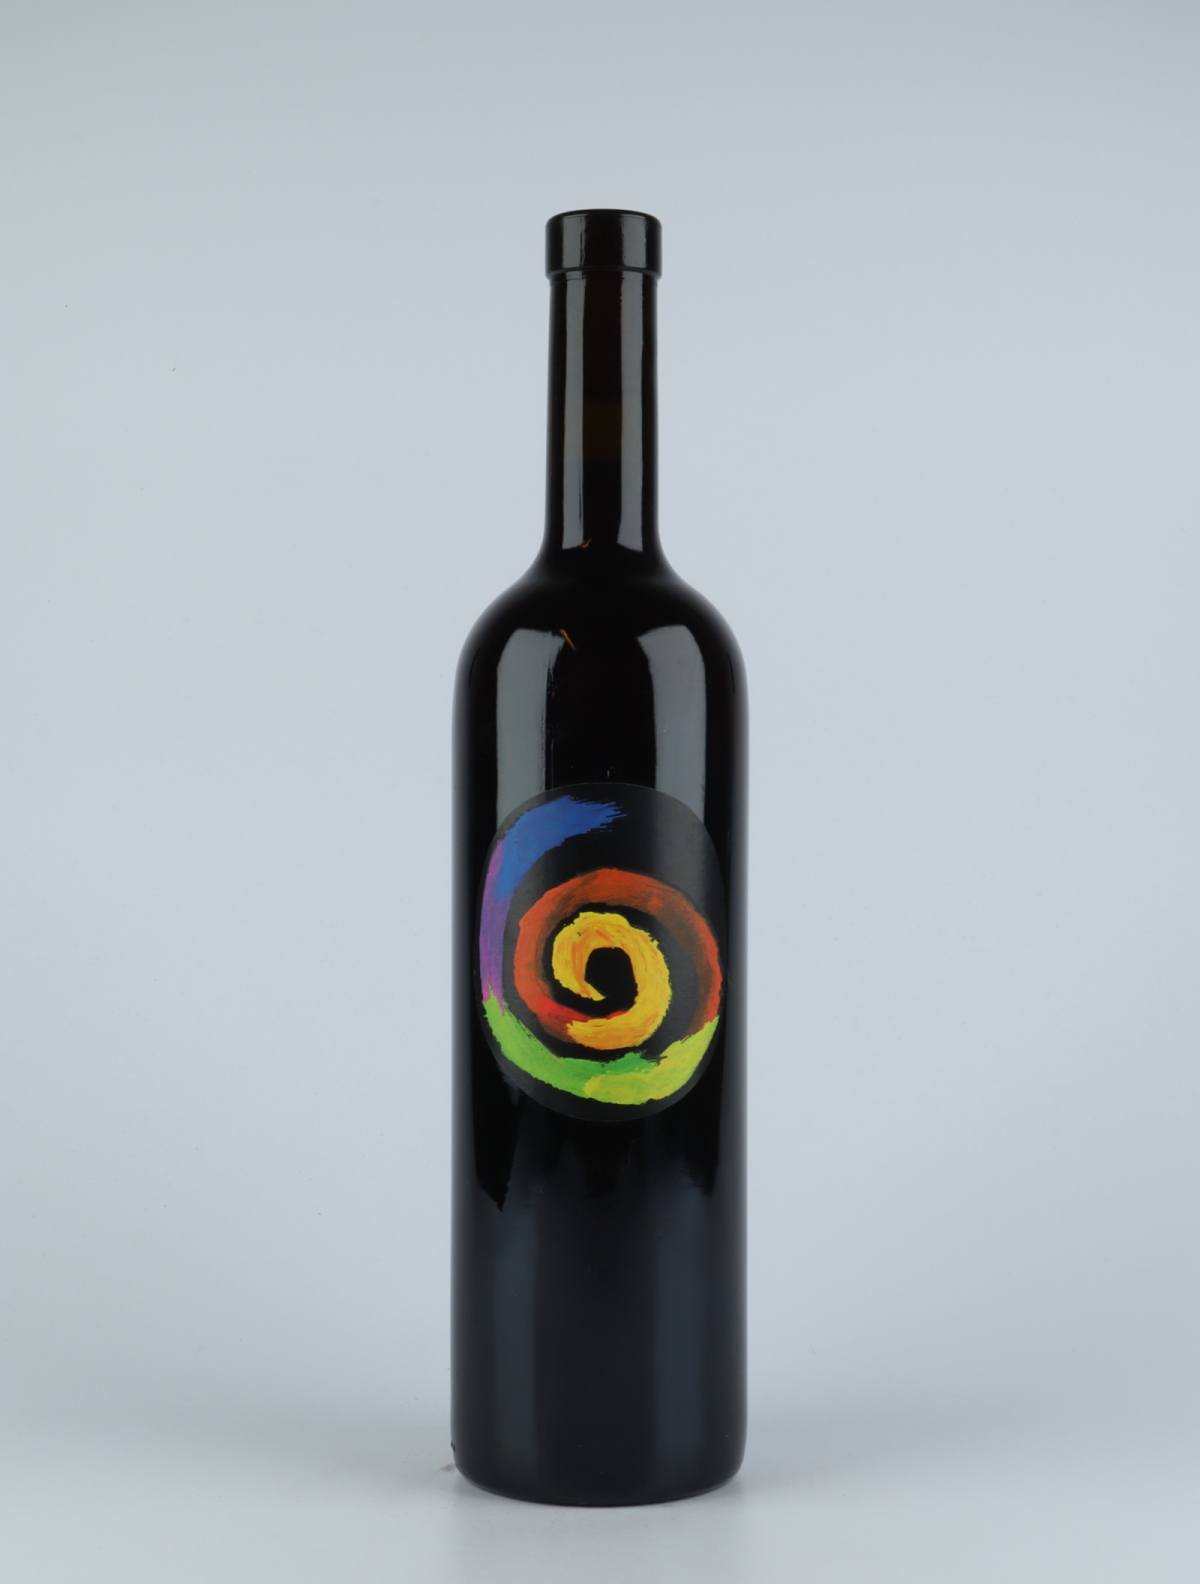 En flaske 2015 Rosso...se Rødvin fra Tenuta Selvadolce, Ligurien i Italien